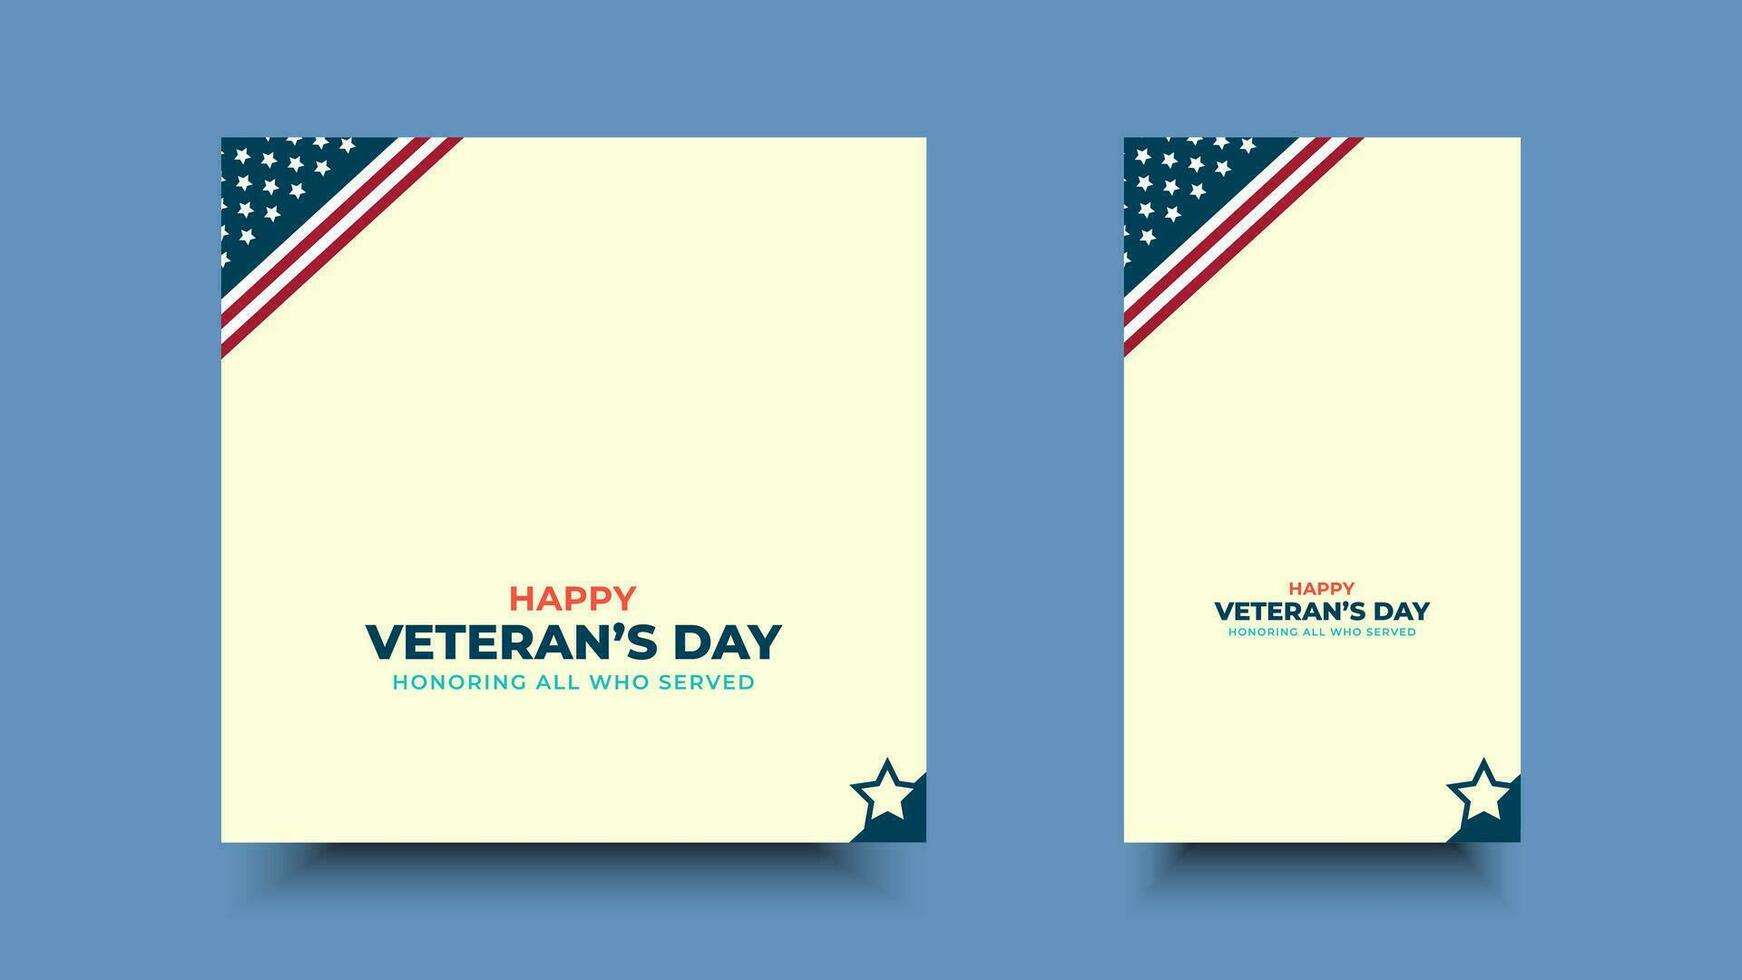 veteranen dag, eerbiedigen allemaal wie geserveerd.frame en ster ornament ontwerpen voor advertenties, affiches, spandoeken, achtergronden. vector